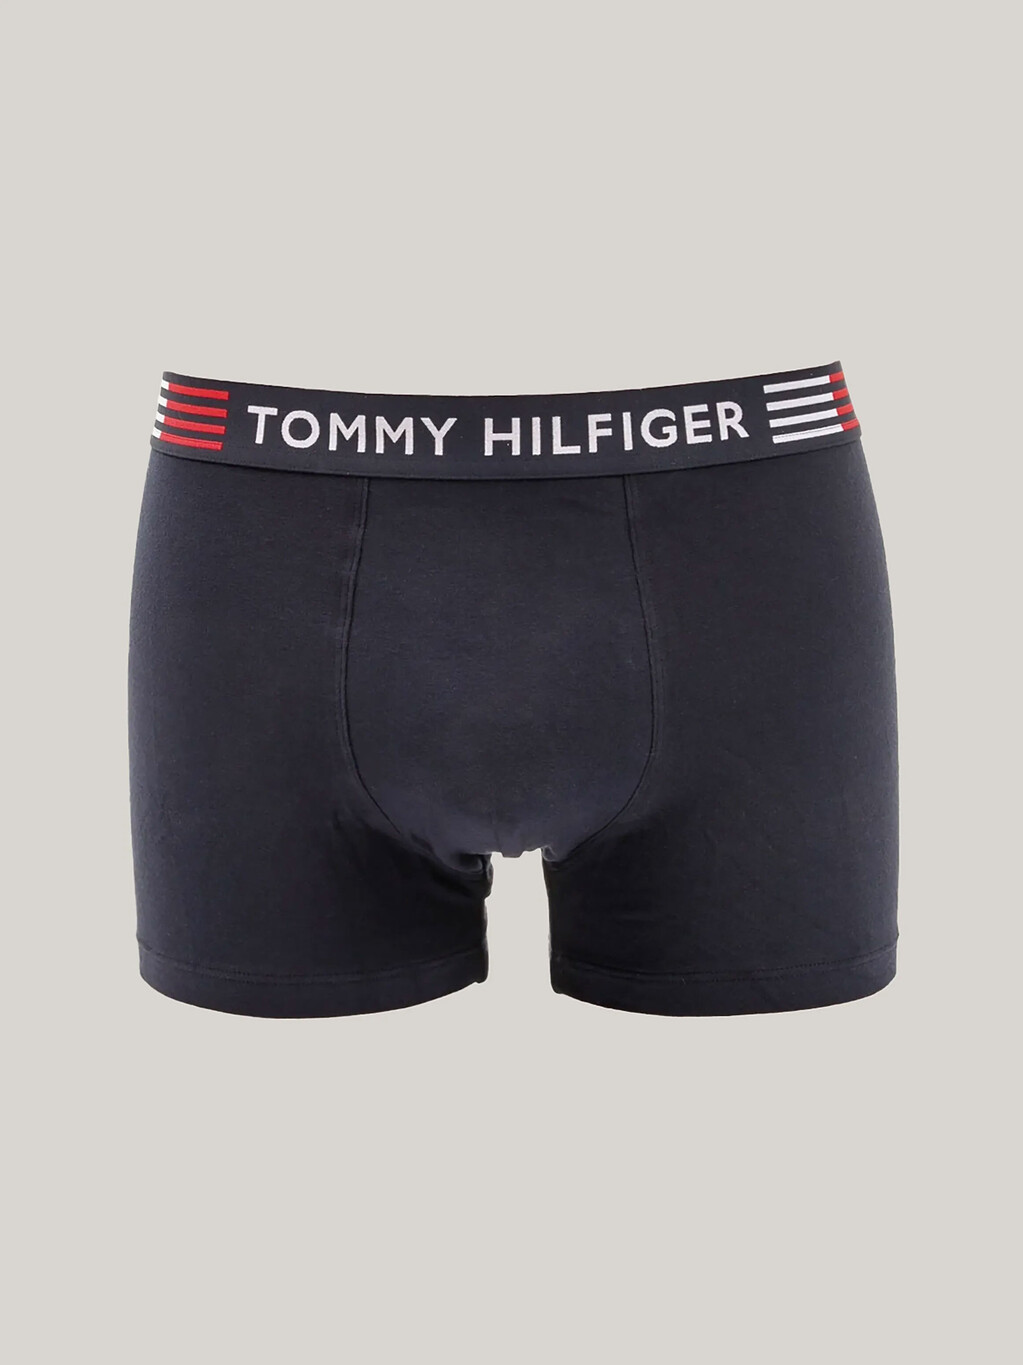 Tommy Hilfiger Stretch Trunks, Desert Sky, hi-res